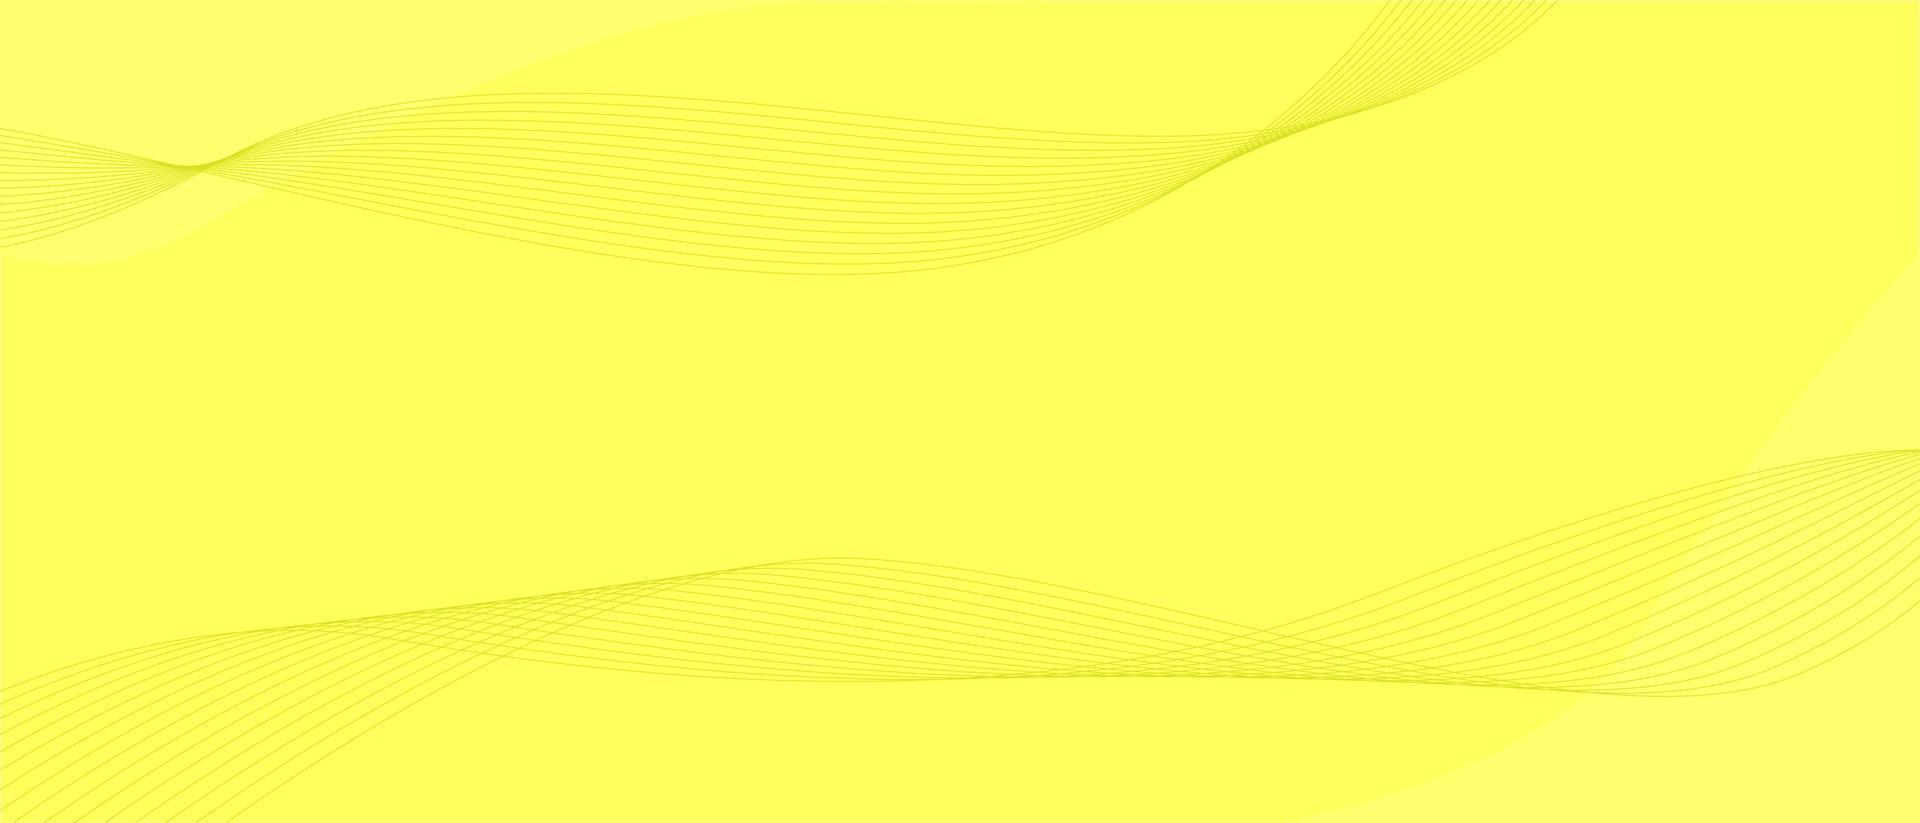 fundo amarelo com linha ondulada geométrica vetor